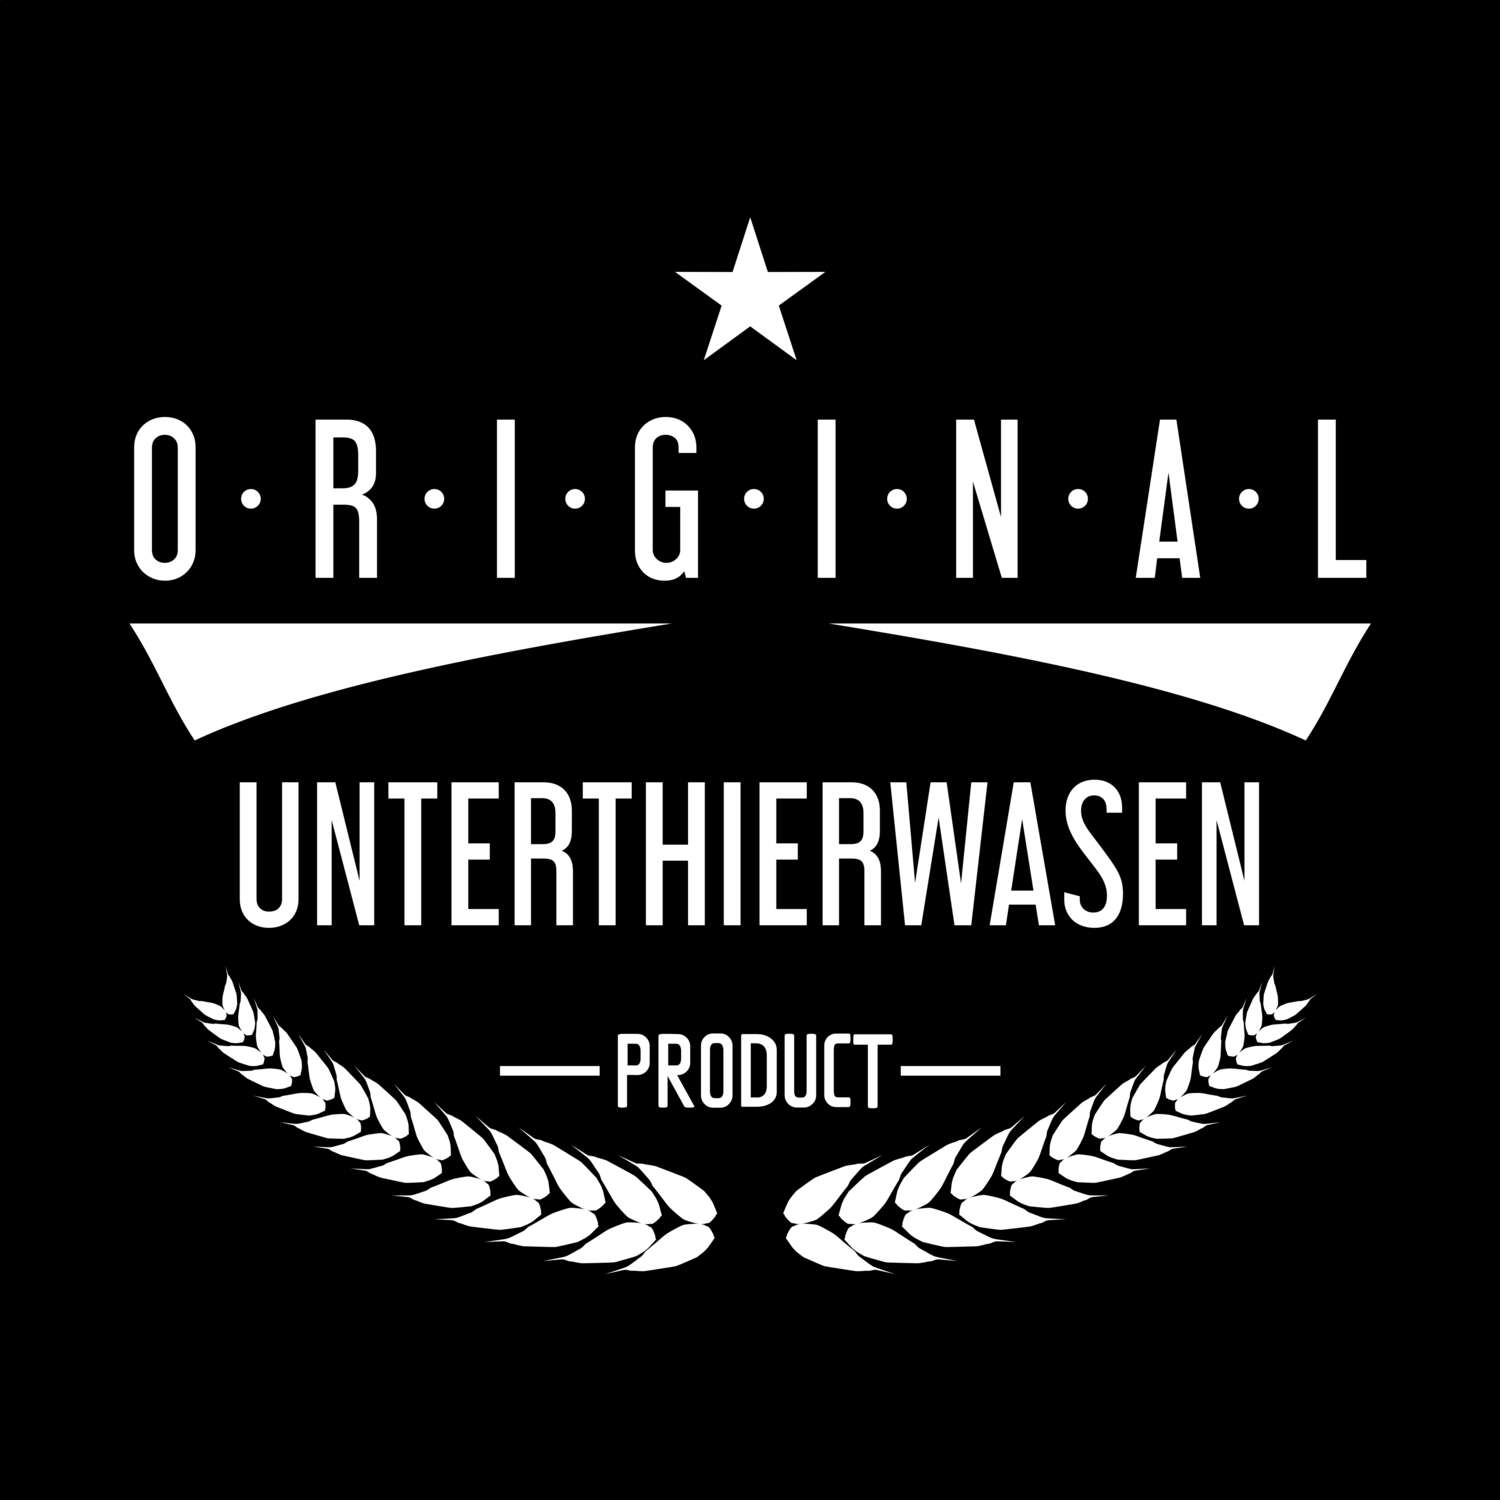 Unterthierwasen T-Shirt »Original Product«